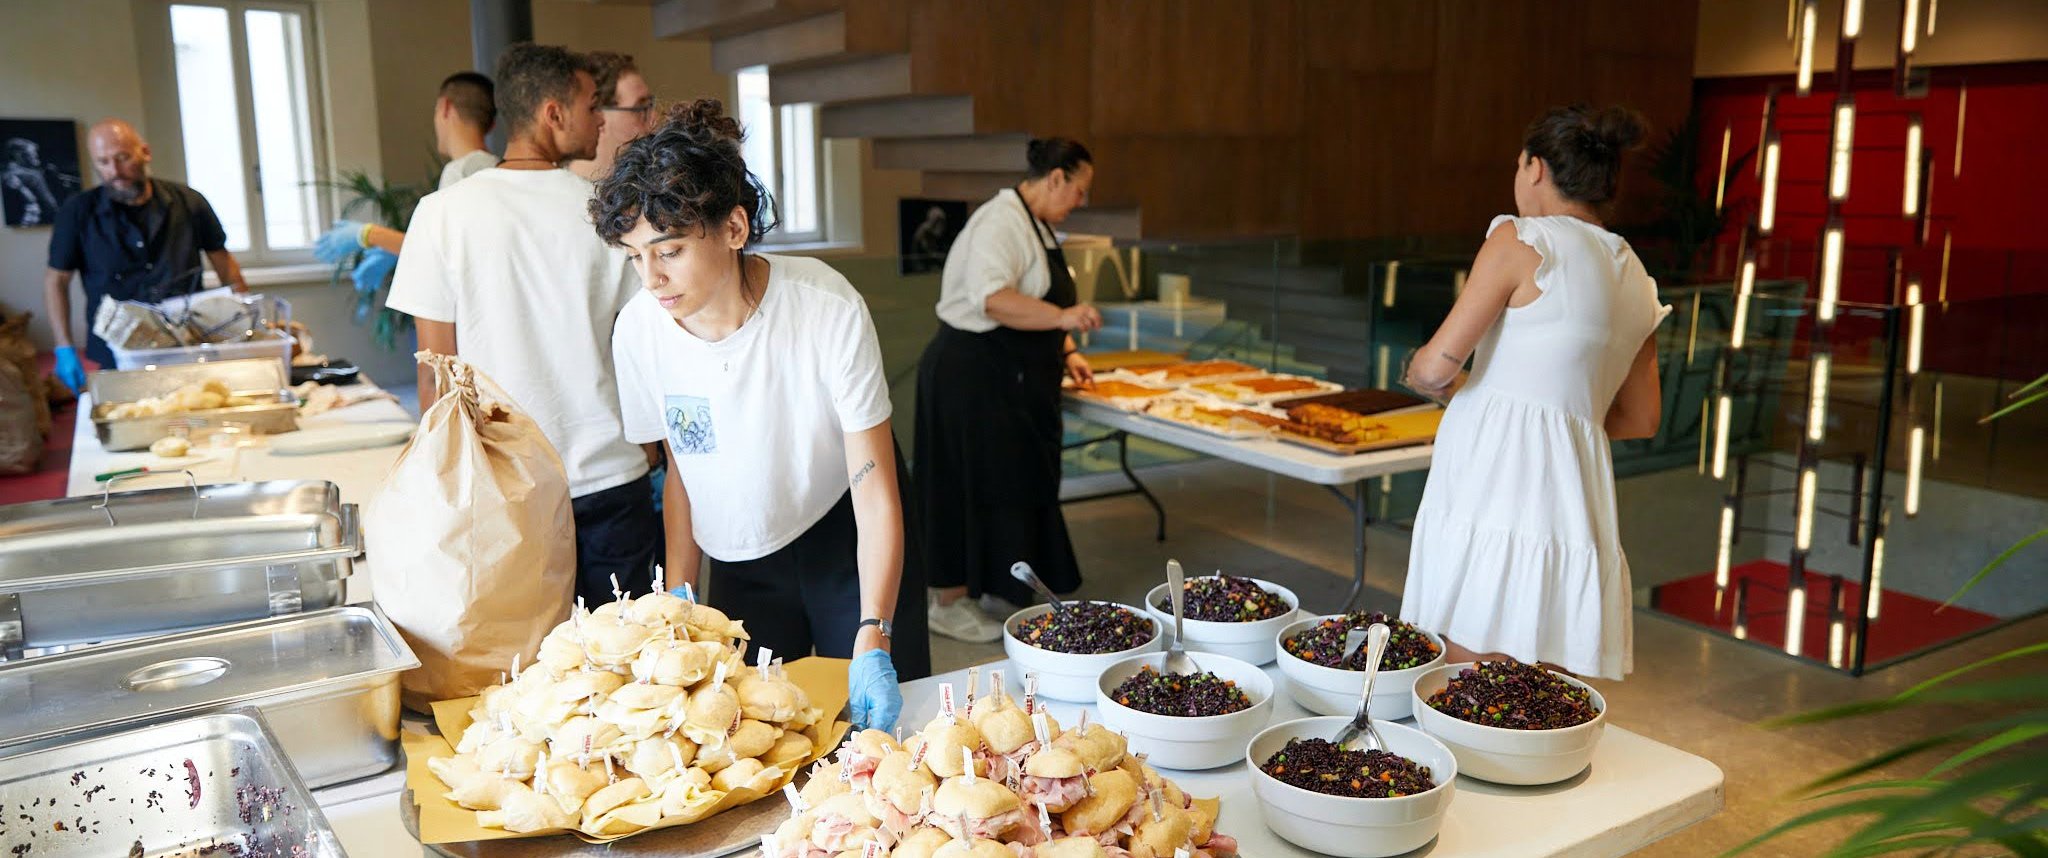 Il catering dell'evento al Ristori è stato preparato dai giovani collaboratori del ristorante no-profit “Mangiabottoni”, che fa parte di AIAS